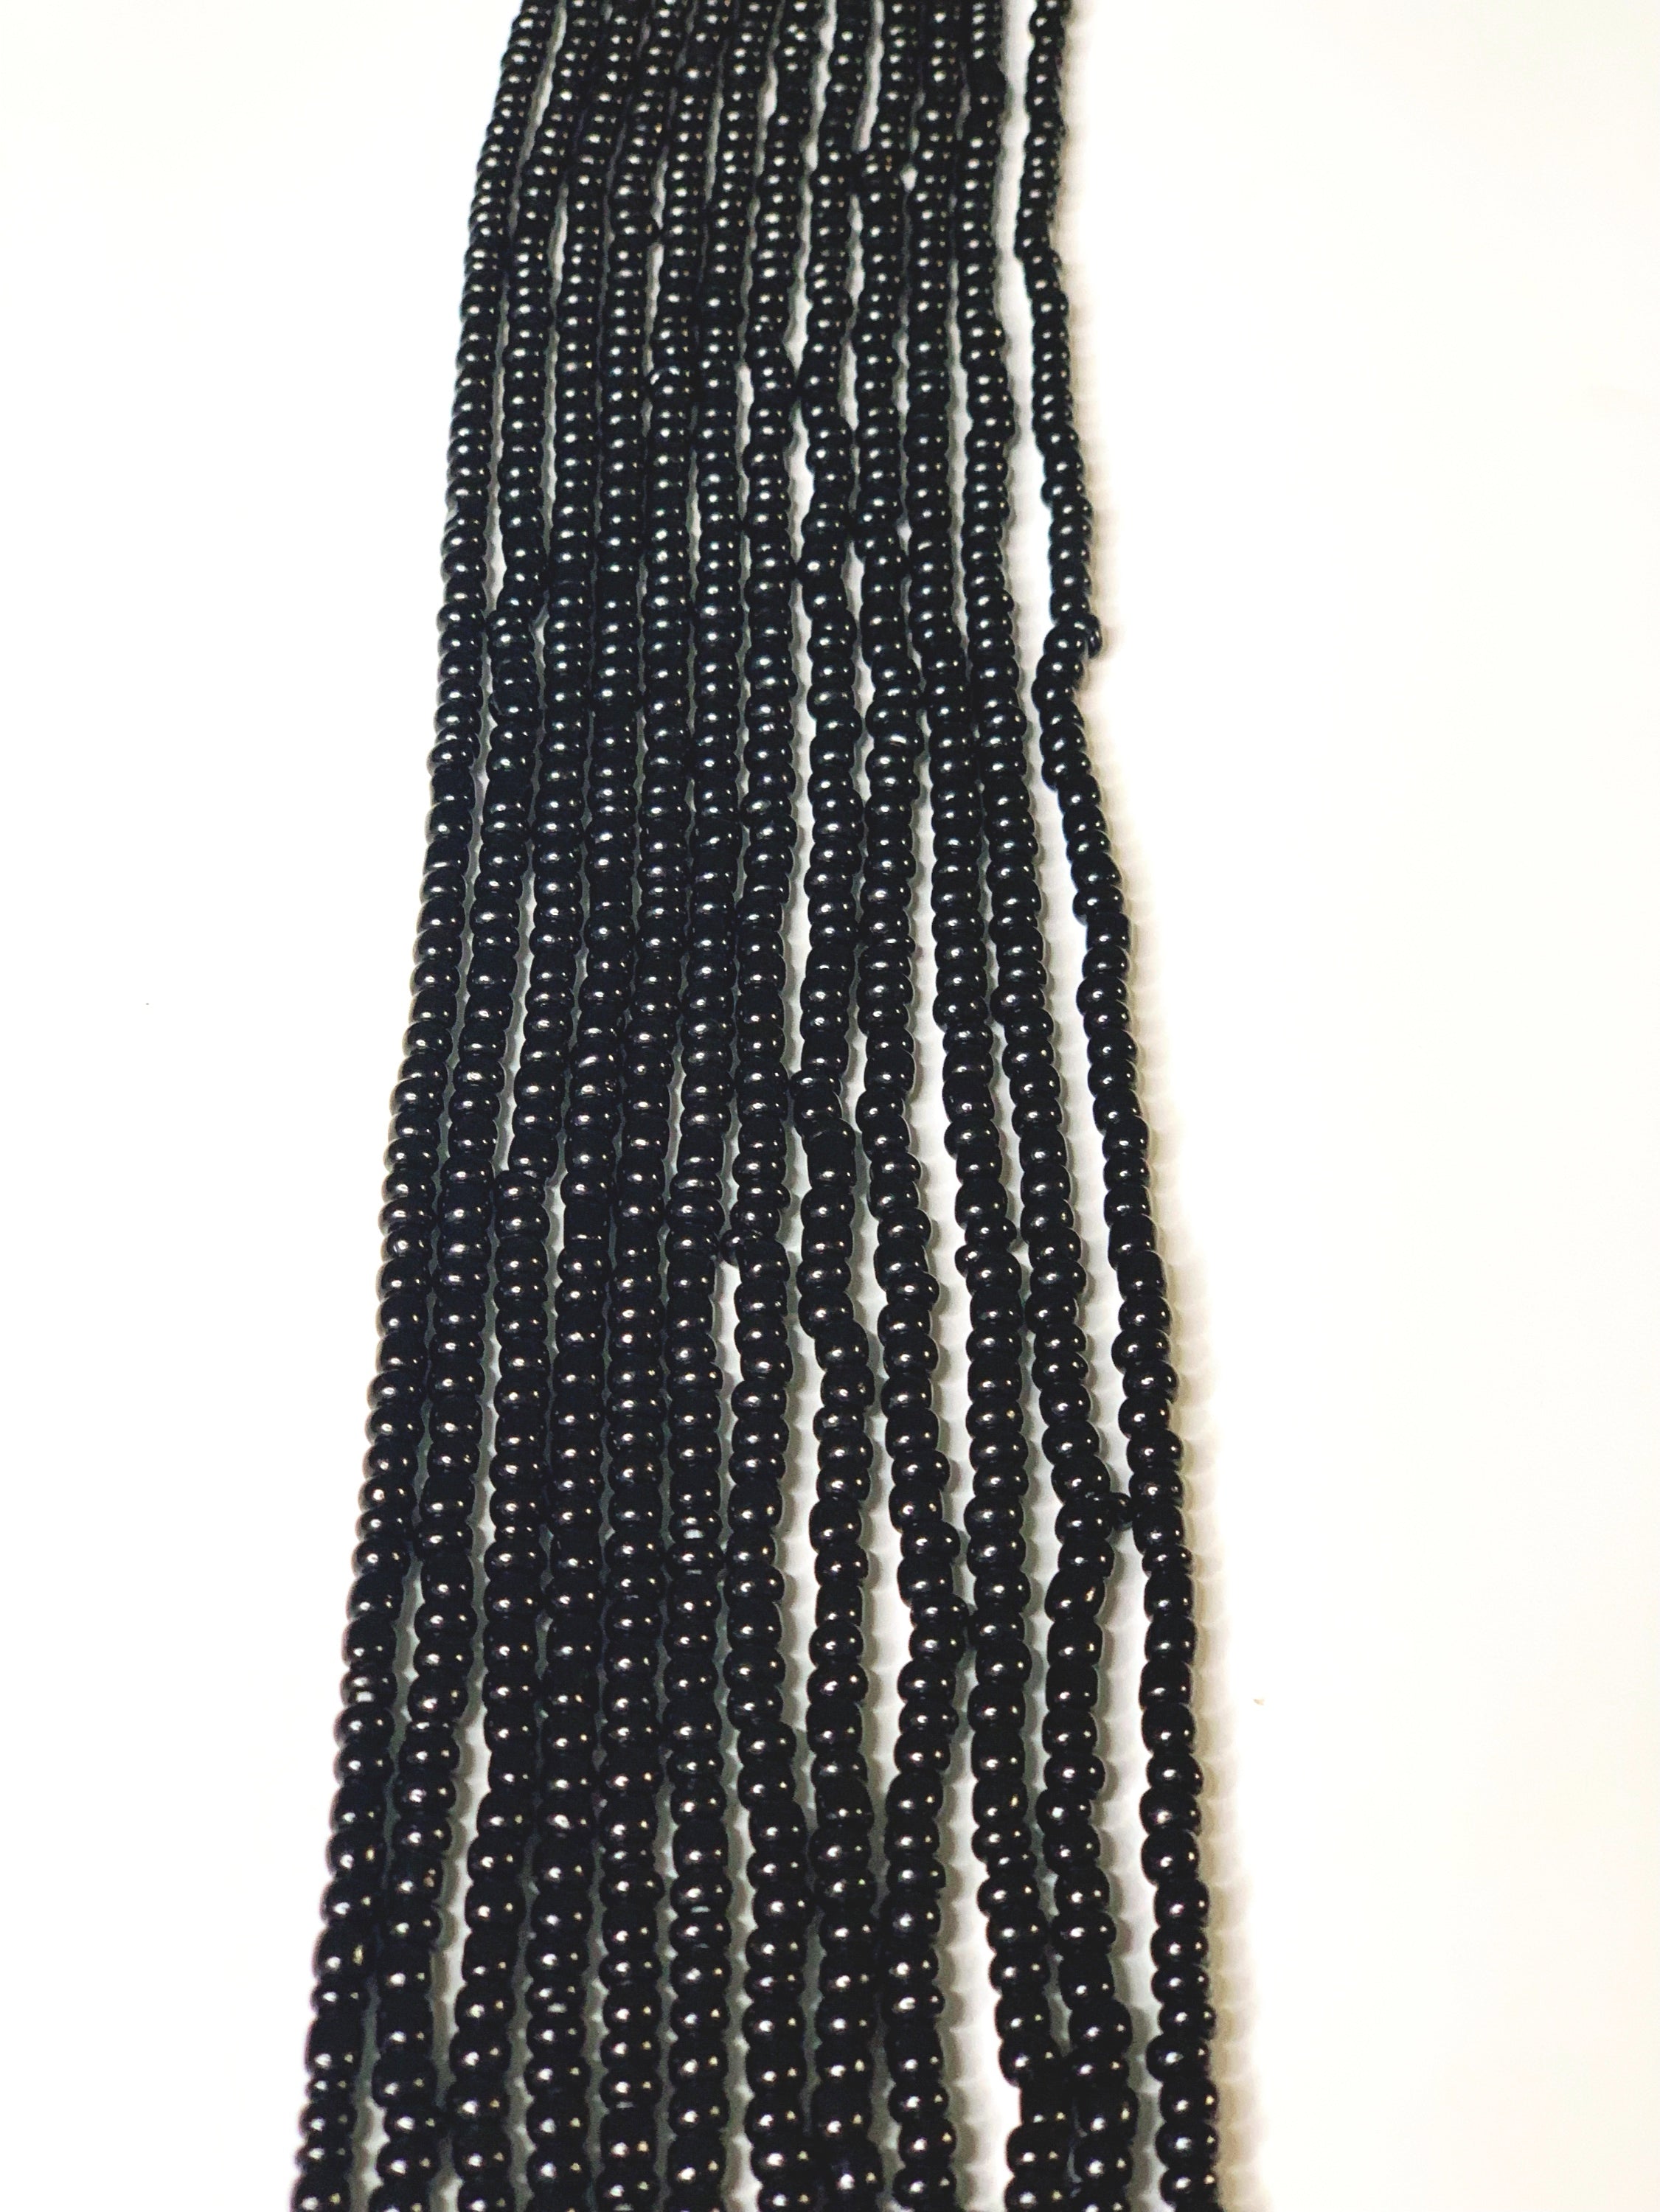 Black Waist Beads - Classybaya 